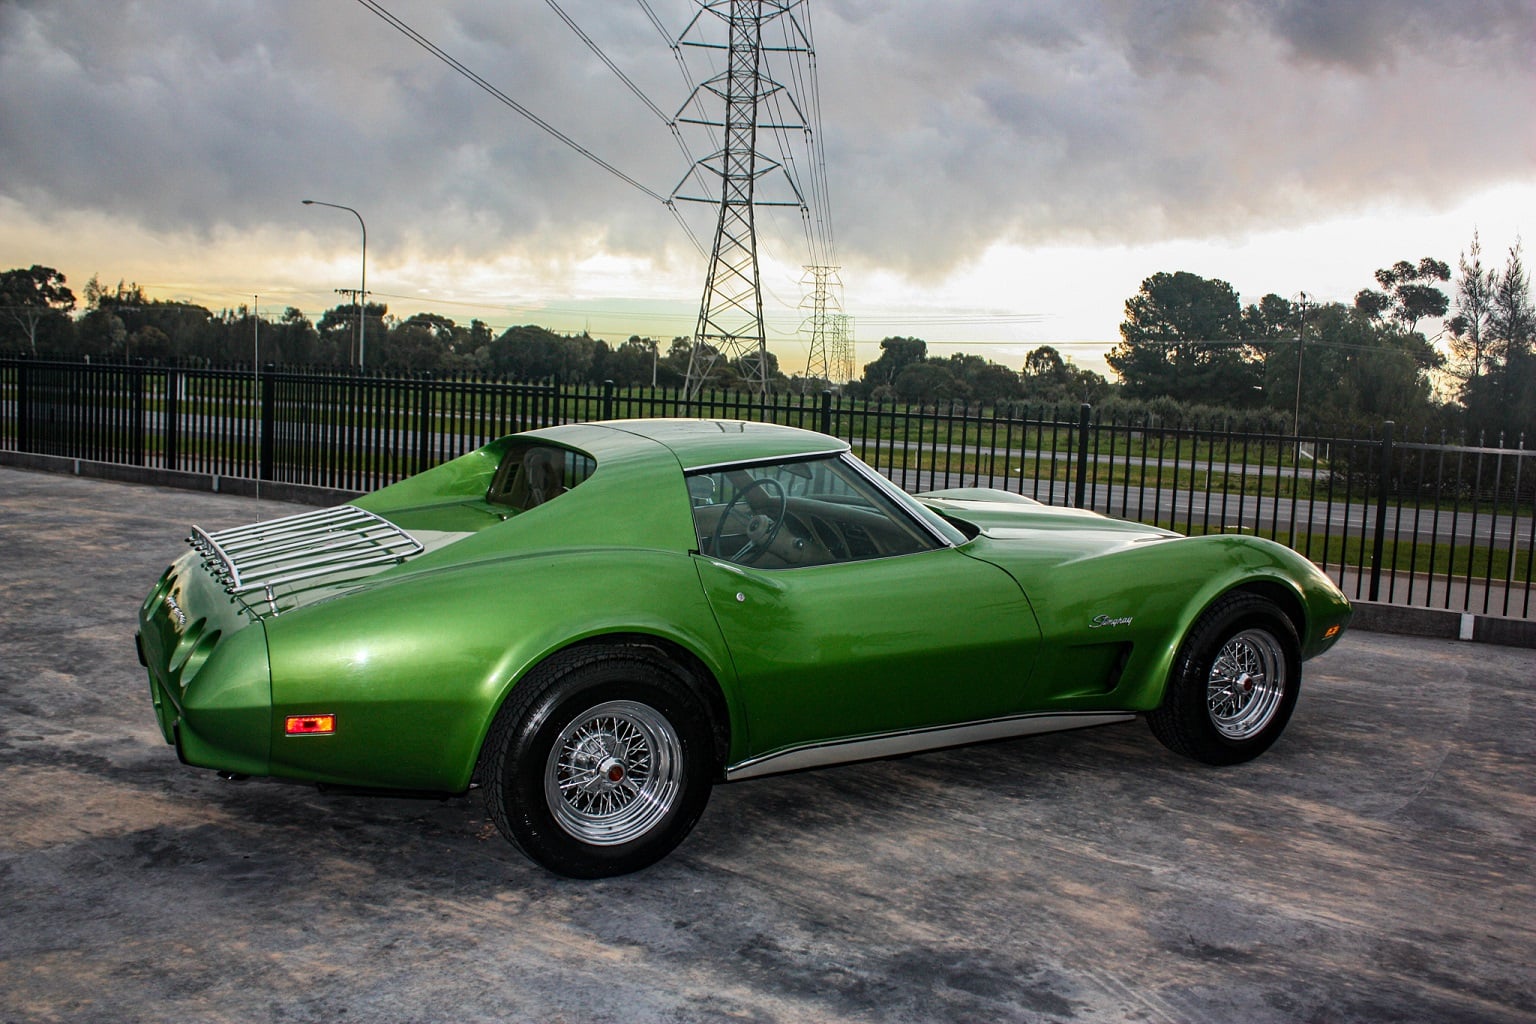 1975 Chevrolet Corvette green